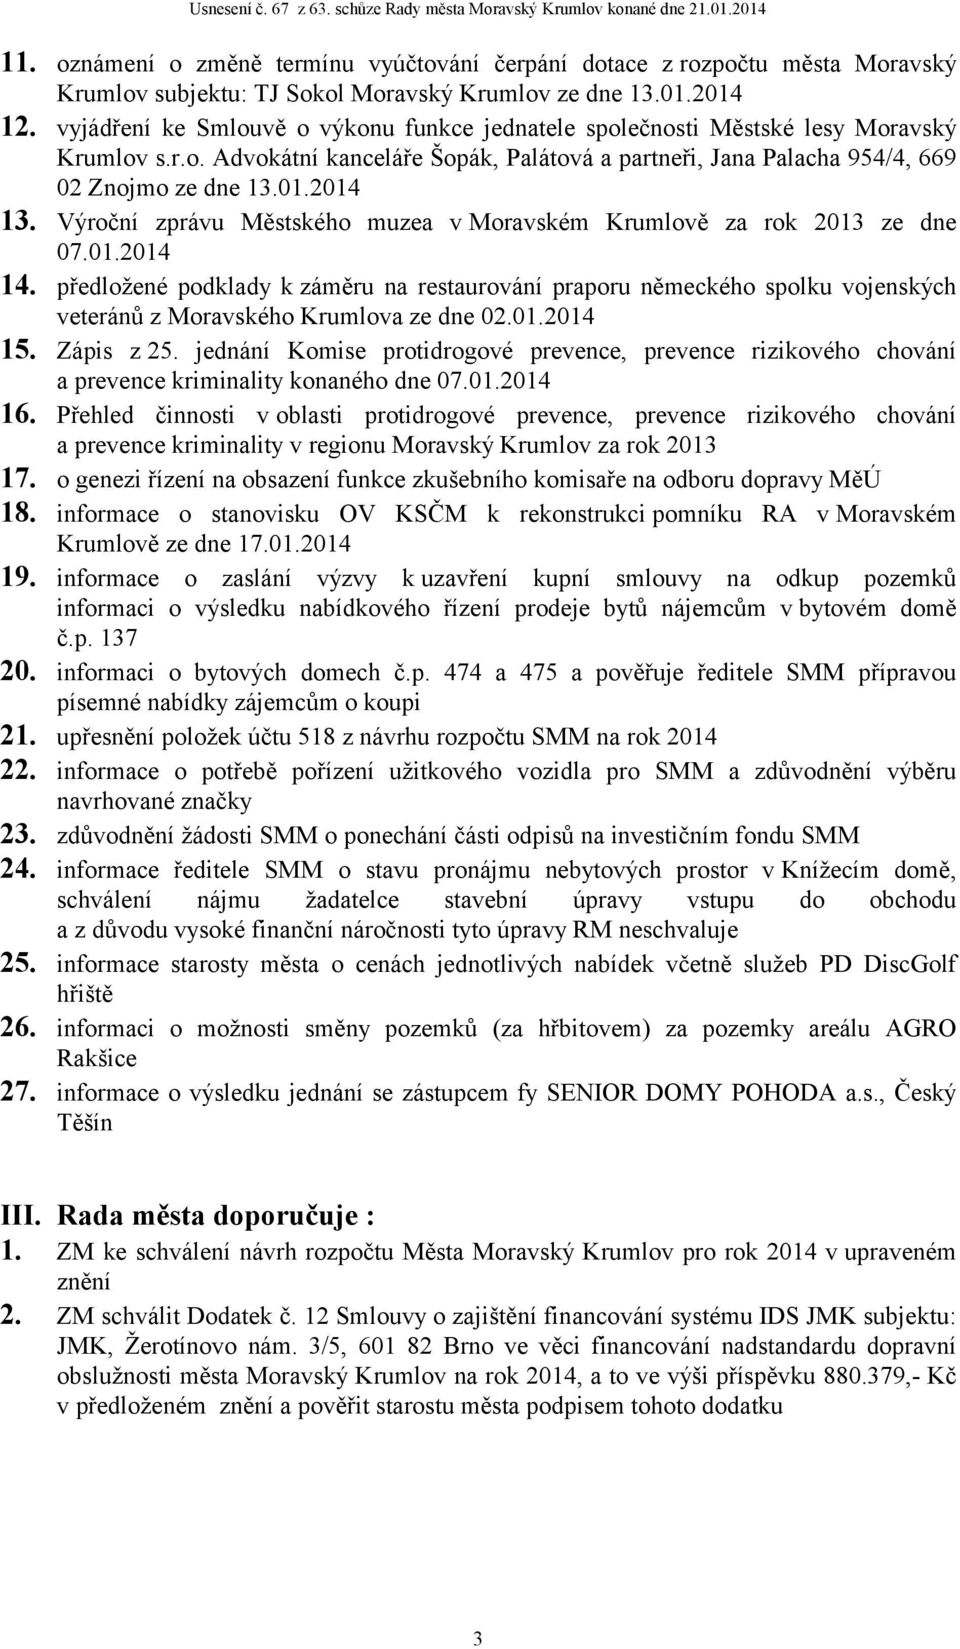 Výroční zprávu Městského muzea v Moravském Krumlově za rok 2013 ze dne 07.01.2014 14.